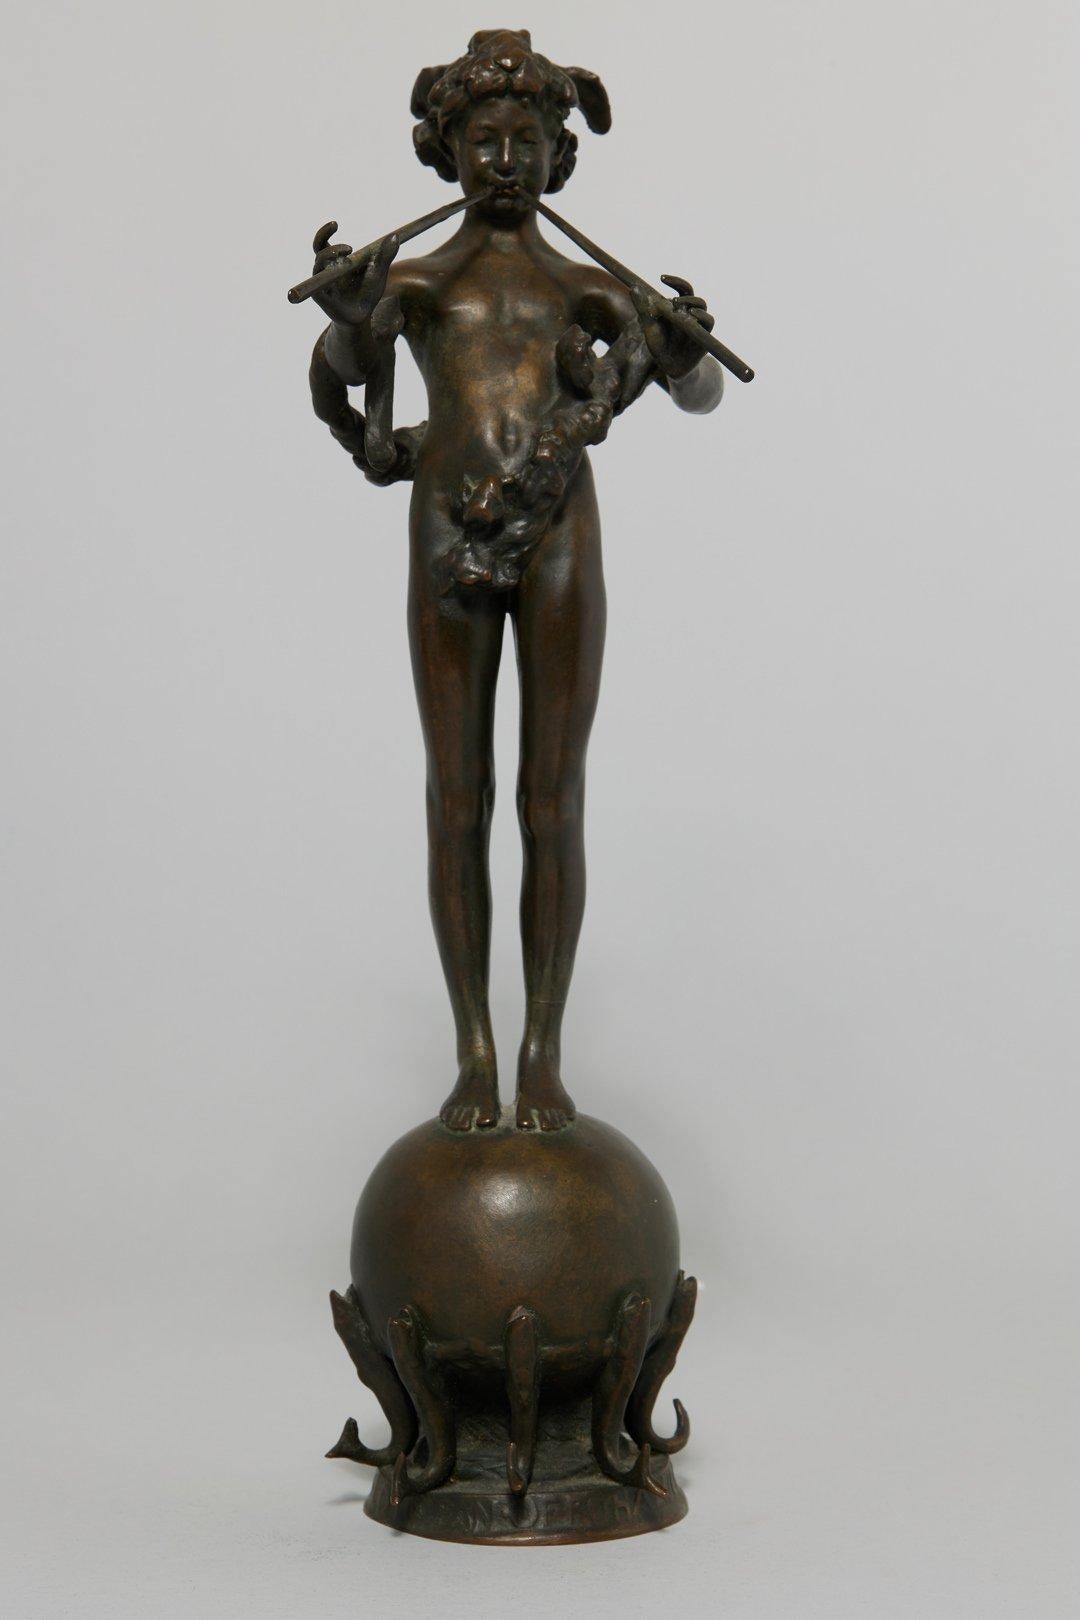 Frederick William MacMonnies Nude Sculpture – Pan von Rohallion, klassische Bronzeskulptur aus Bronzeskulptur, 1889-90